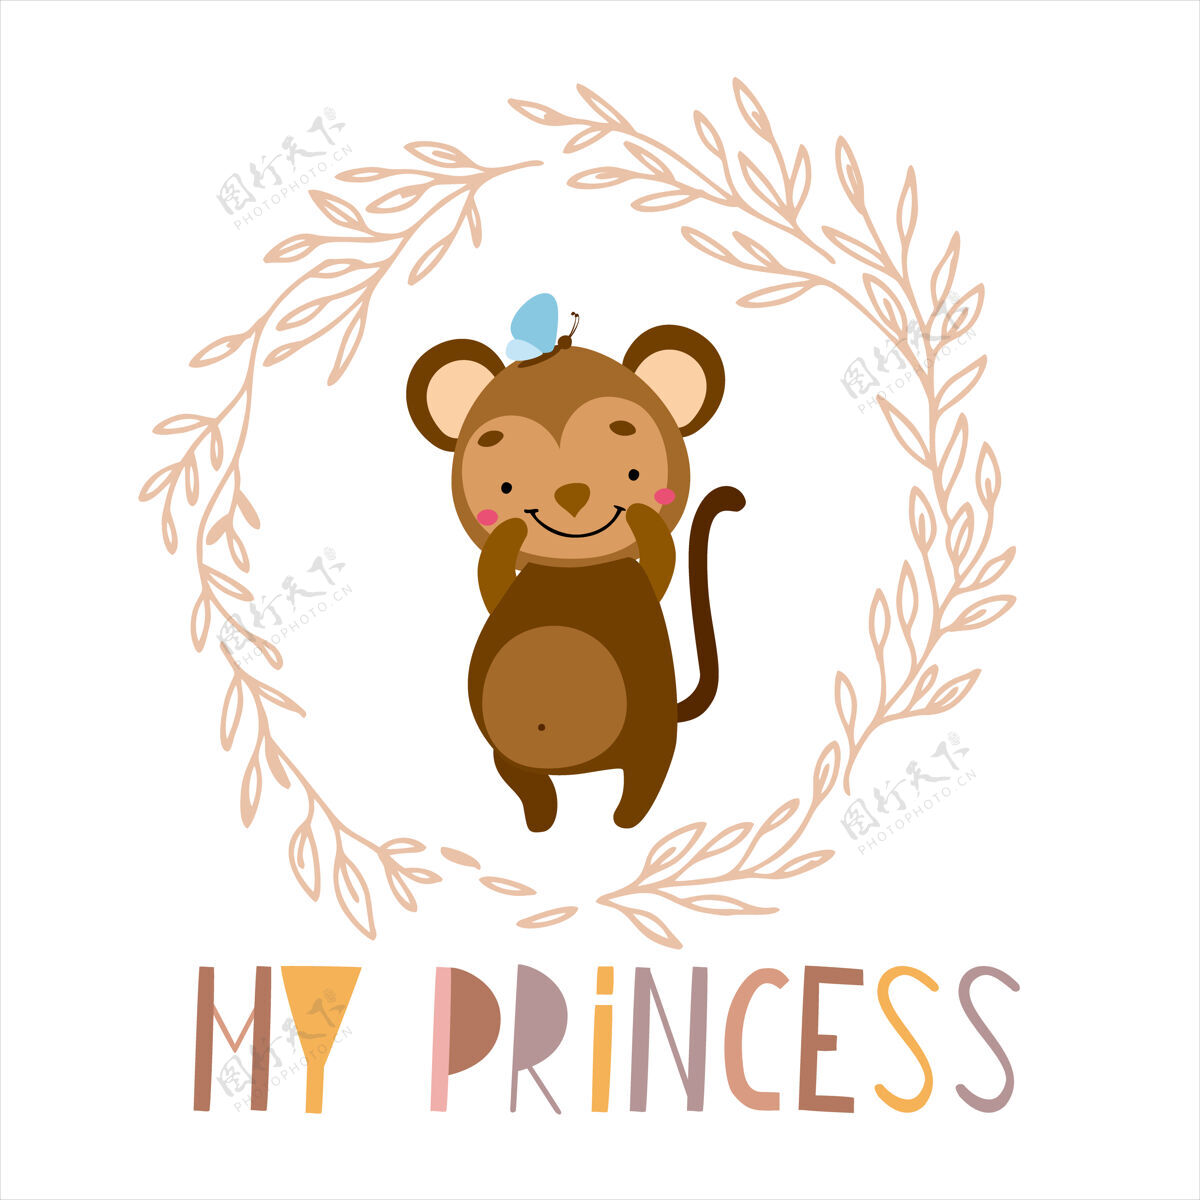 插图猴子我的公主公主宝贝猴子